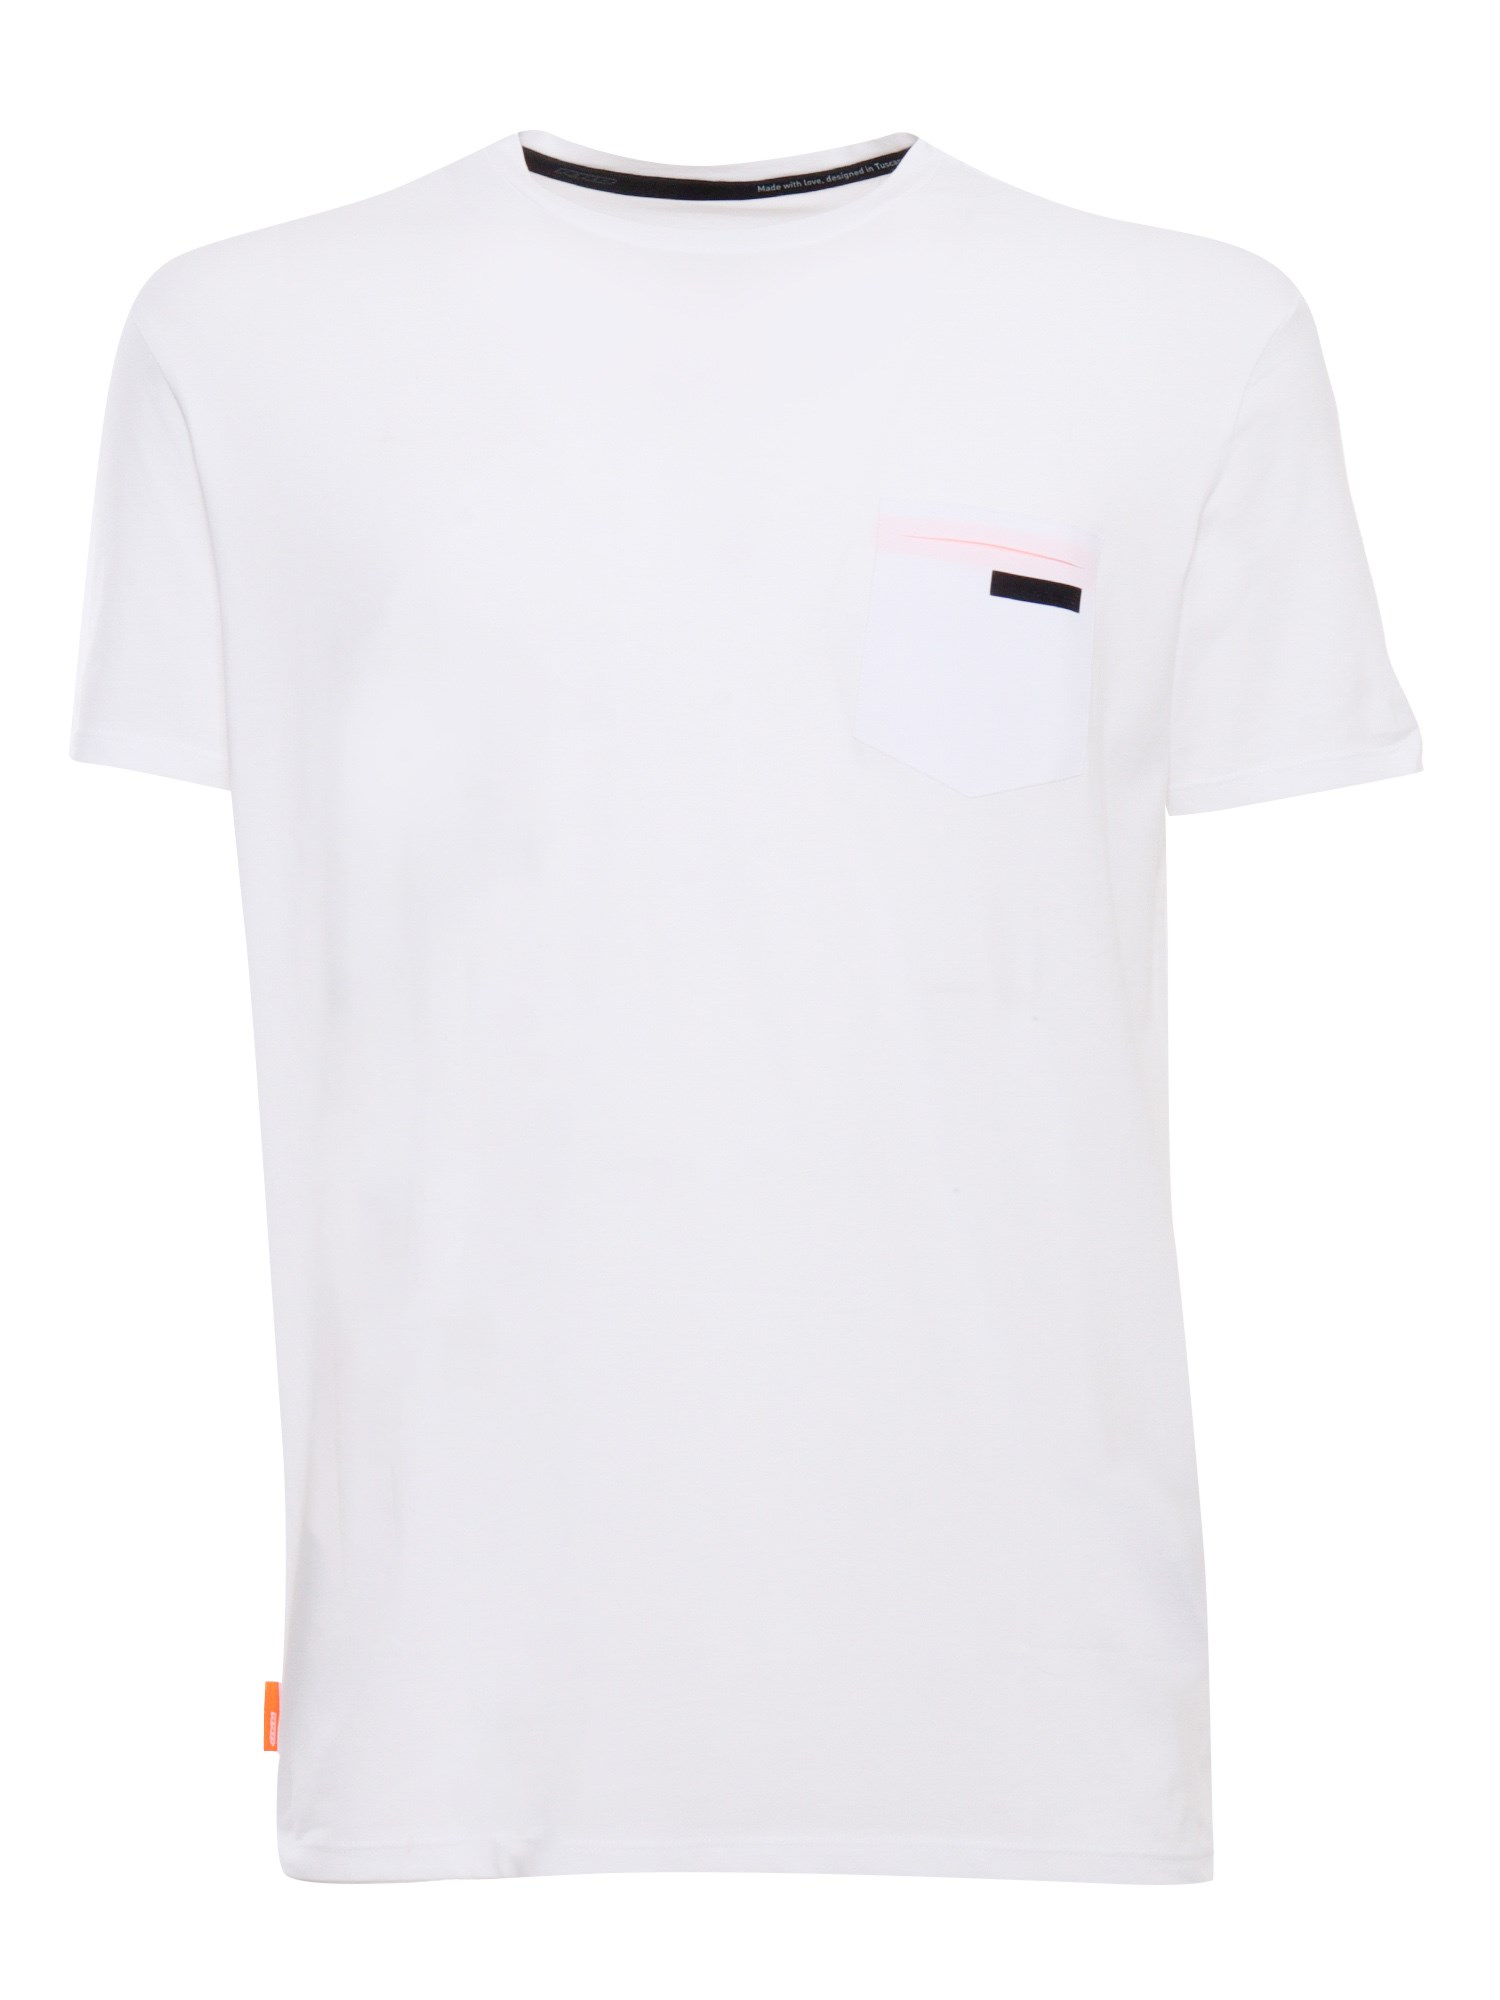 Rrd Revo White T-shirt